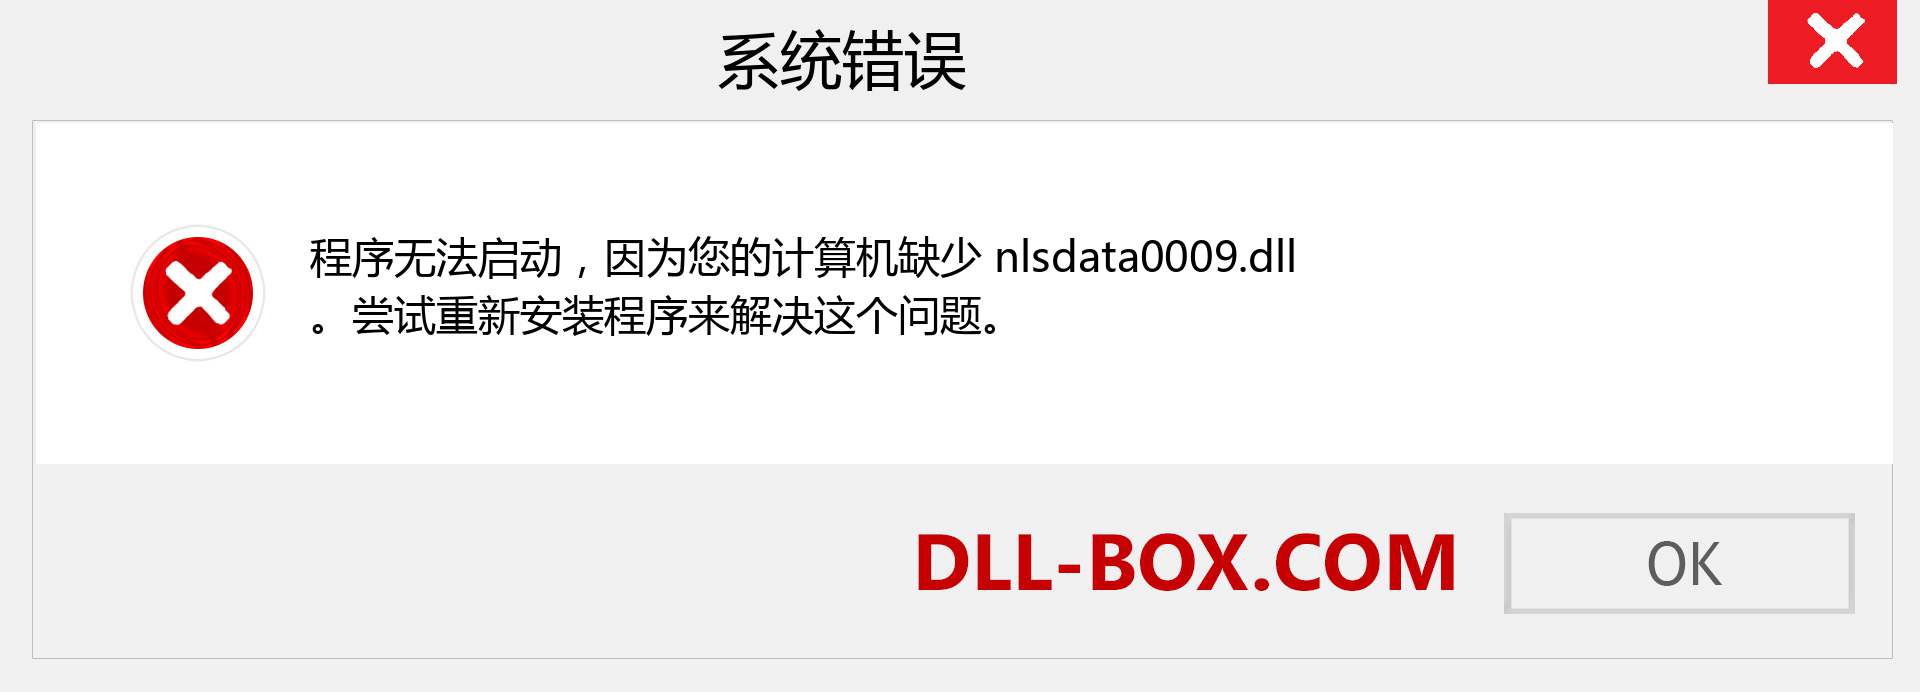 nlsdata0009.dll 文件丢失？。 适用于 Windows 7、8、10 的下载 - 修复 Windows、照片、图像上的 nlsdata0009 dll 丢失错误